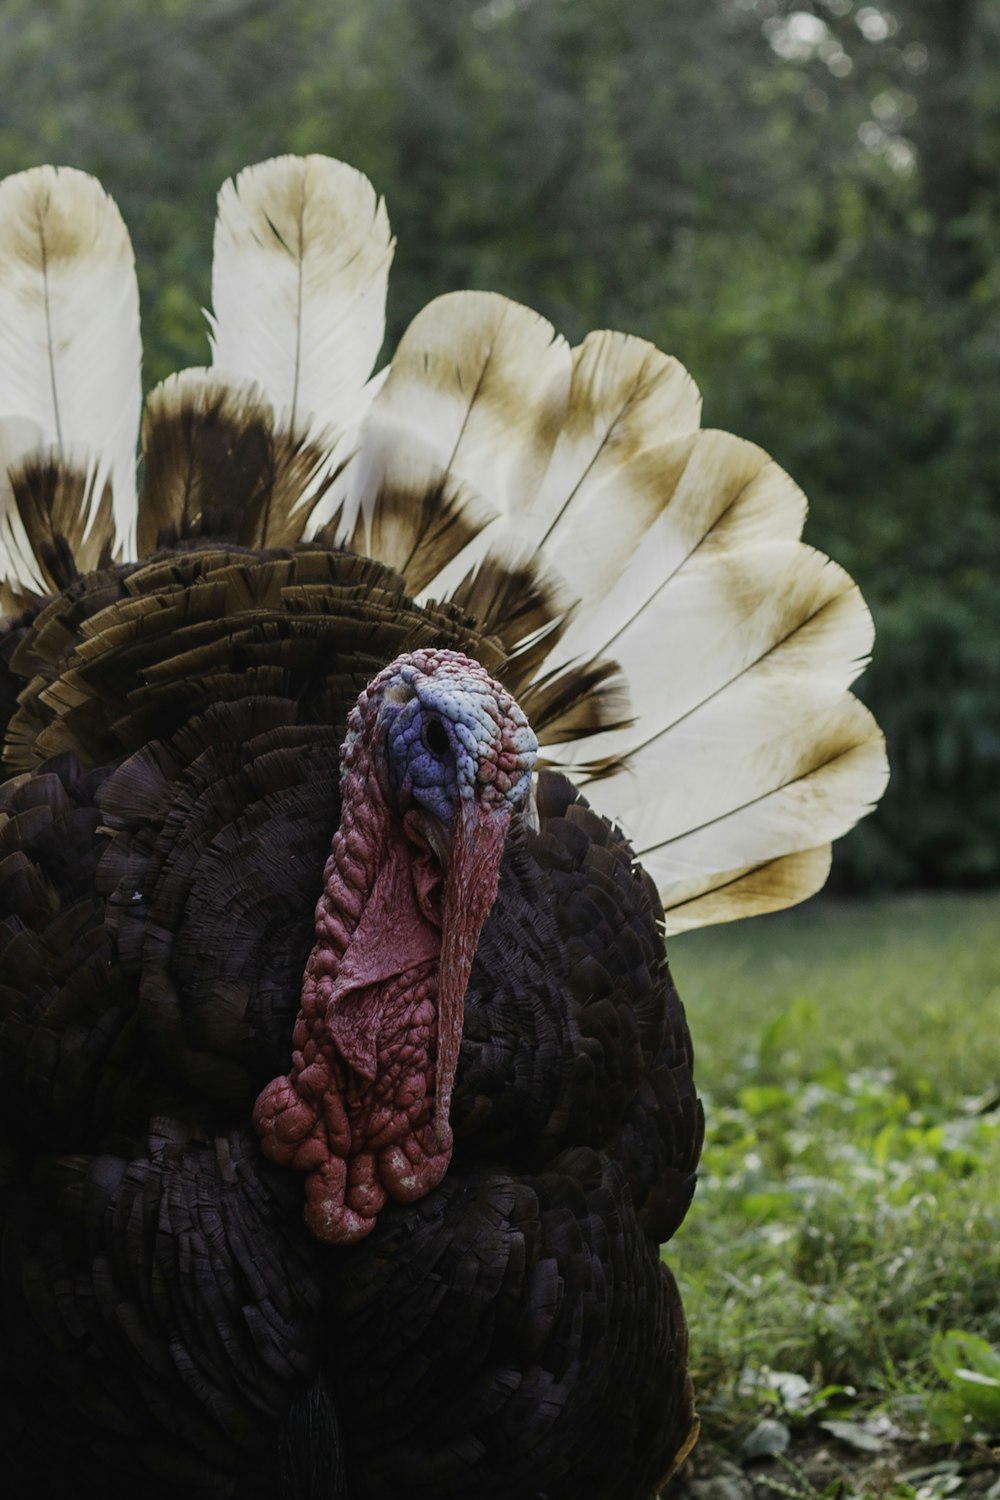 a close up of a turkey in a field